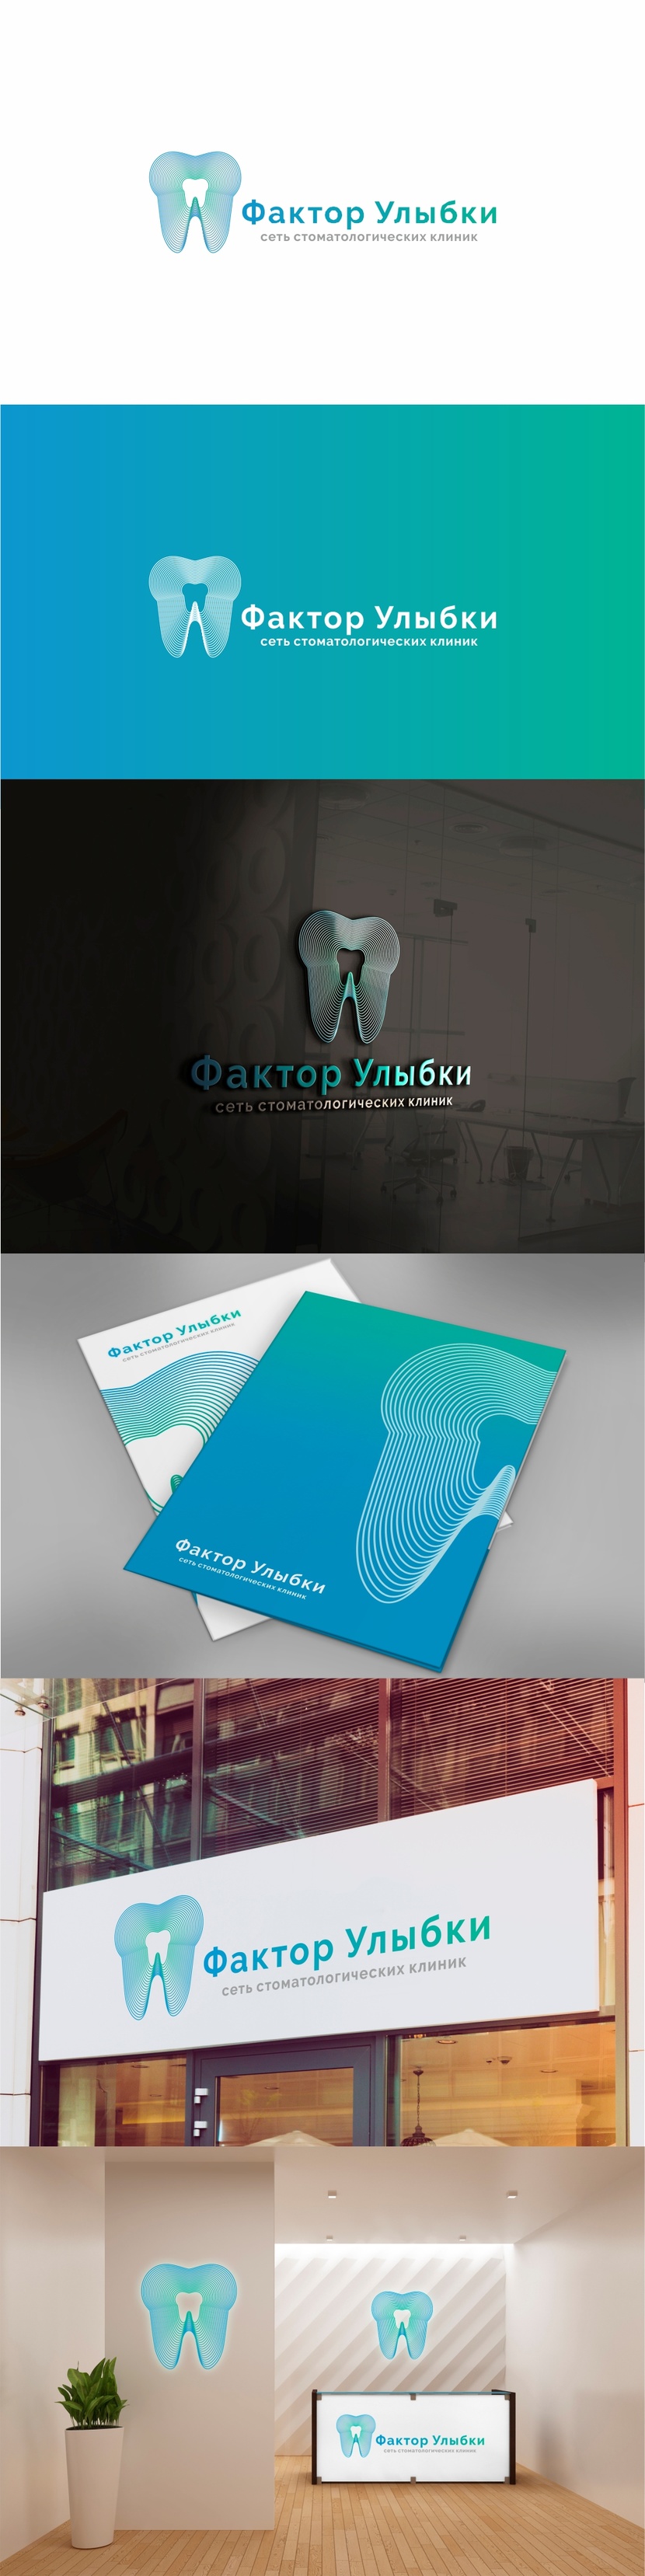 + Разработка логотипа и фирменного стиля для существующей сети стоматологических клиник